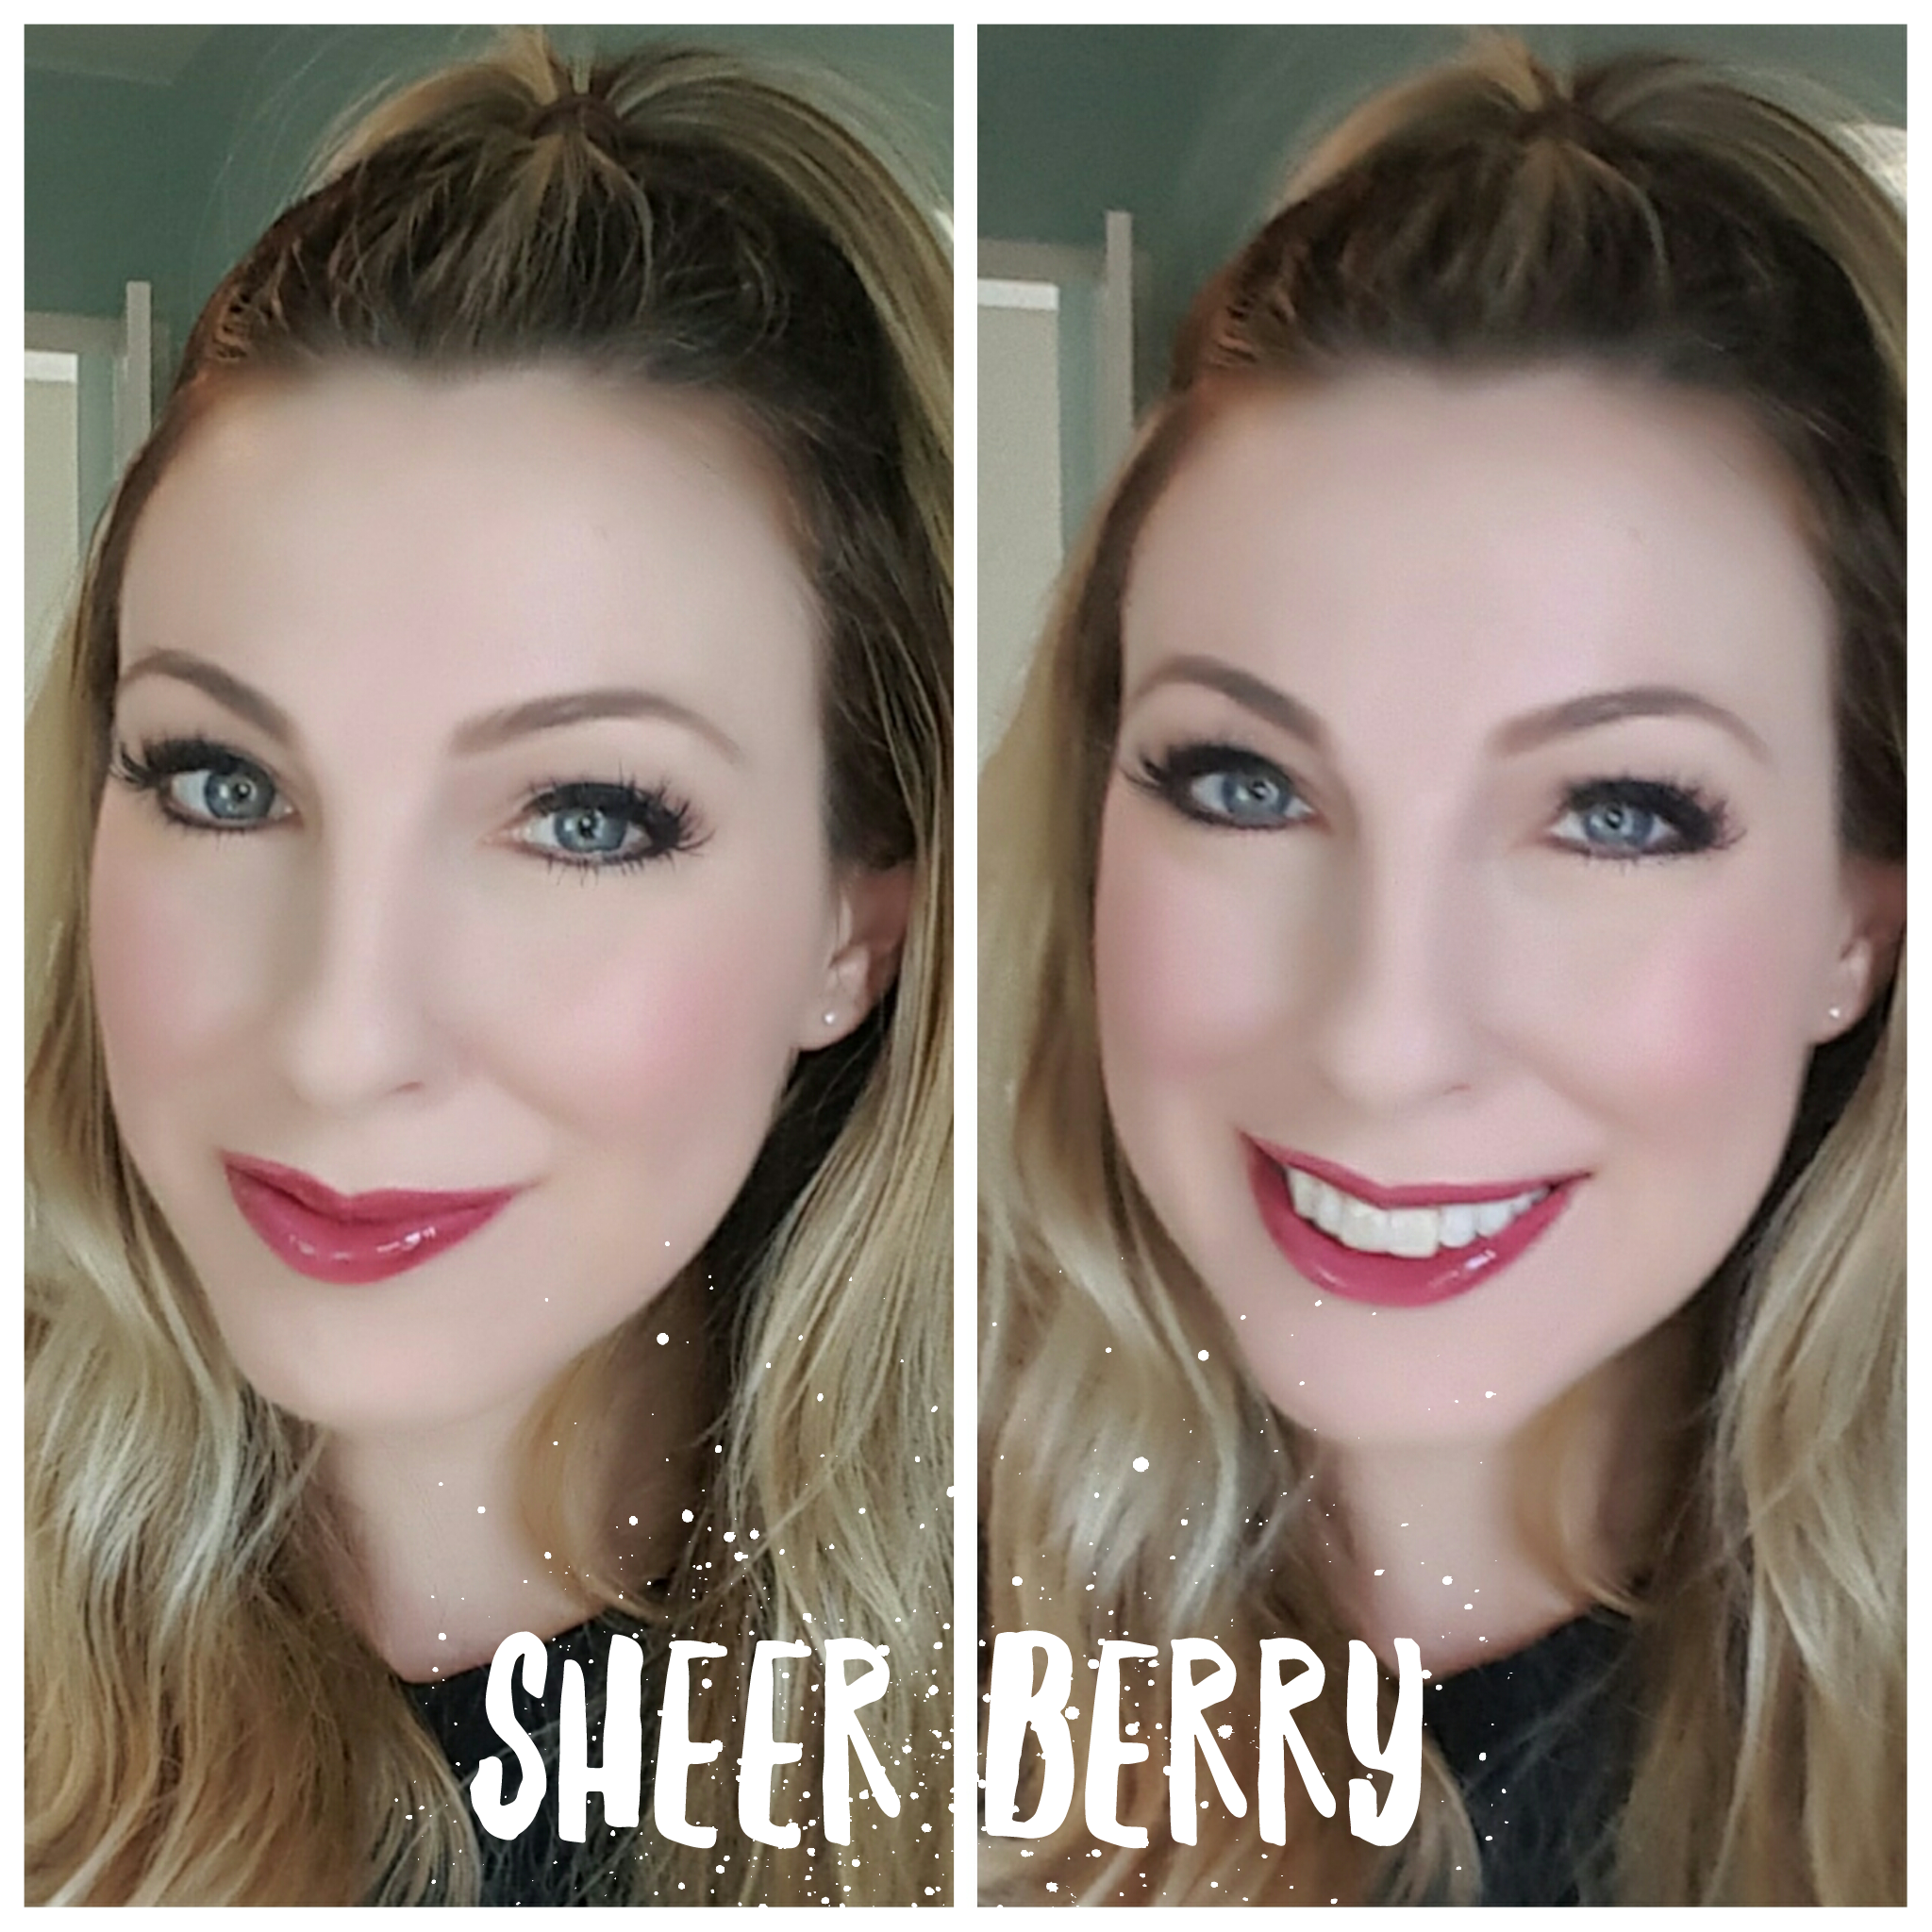 sheer-berry-selfie